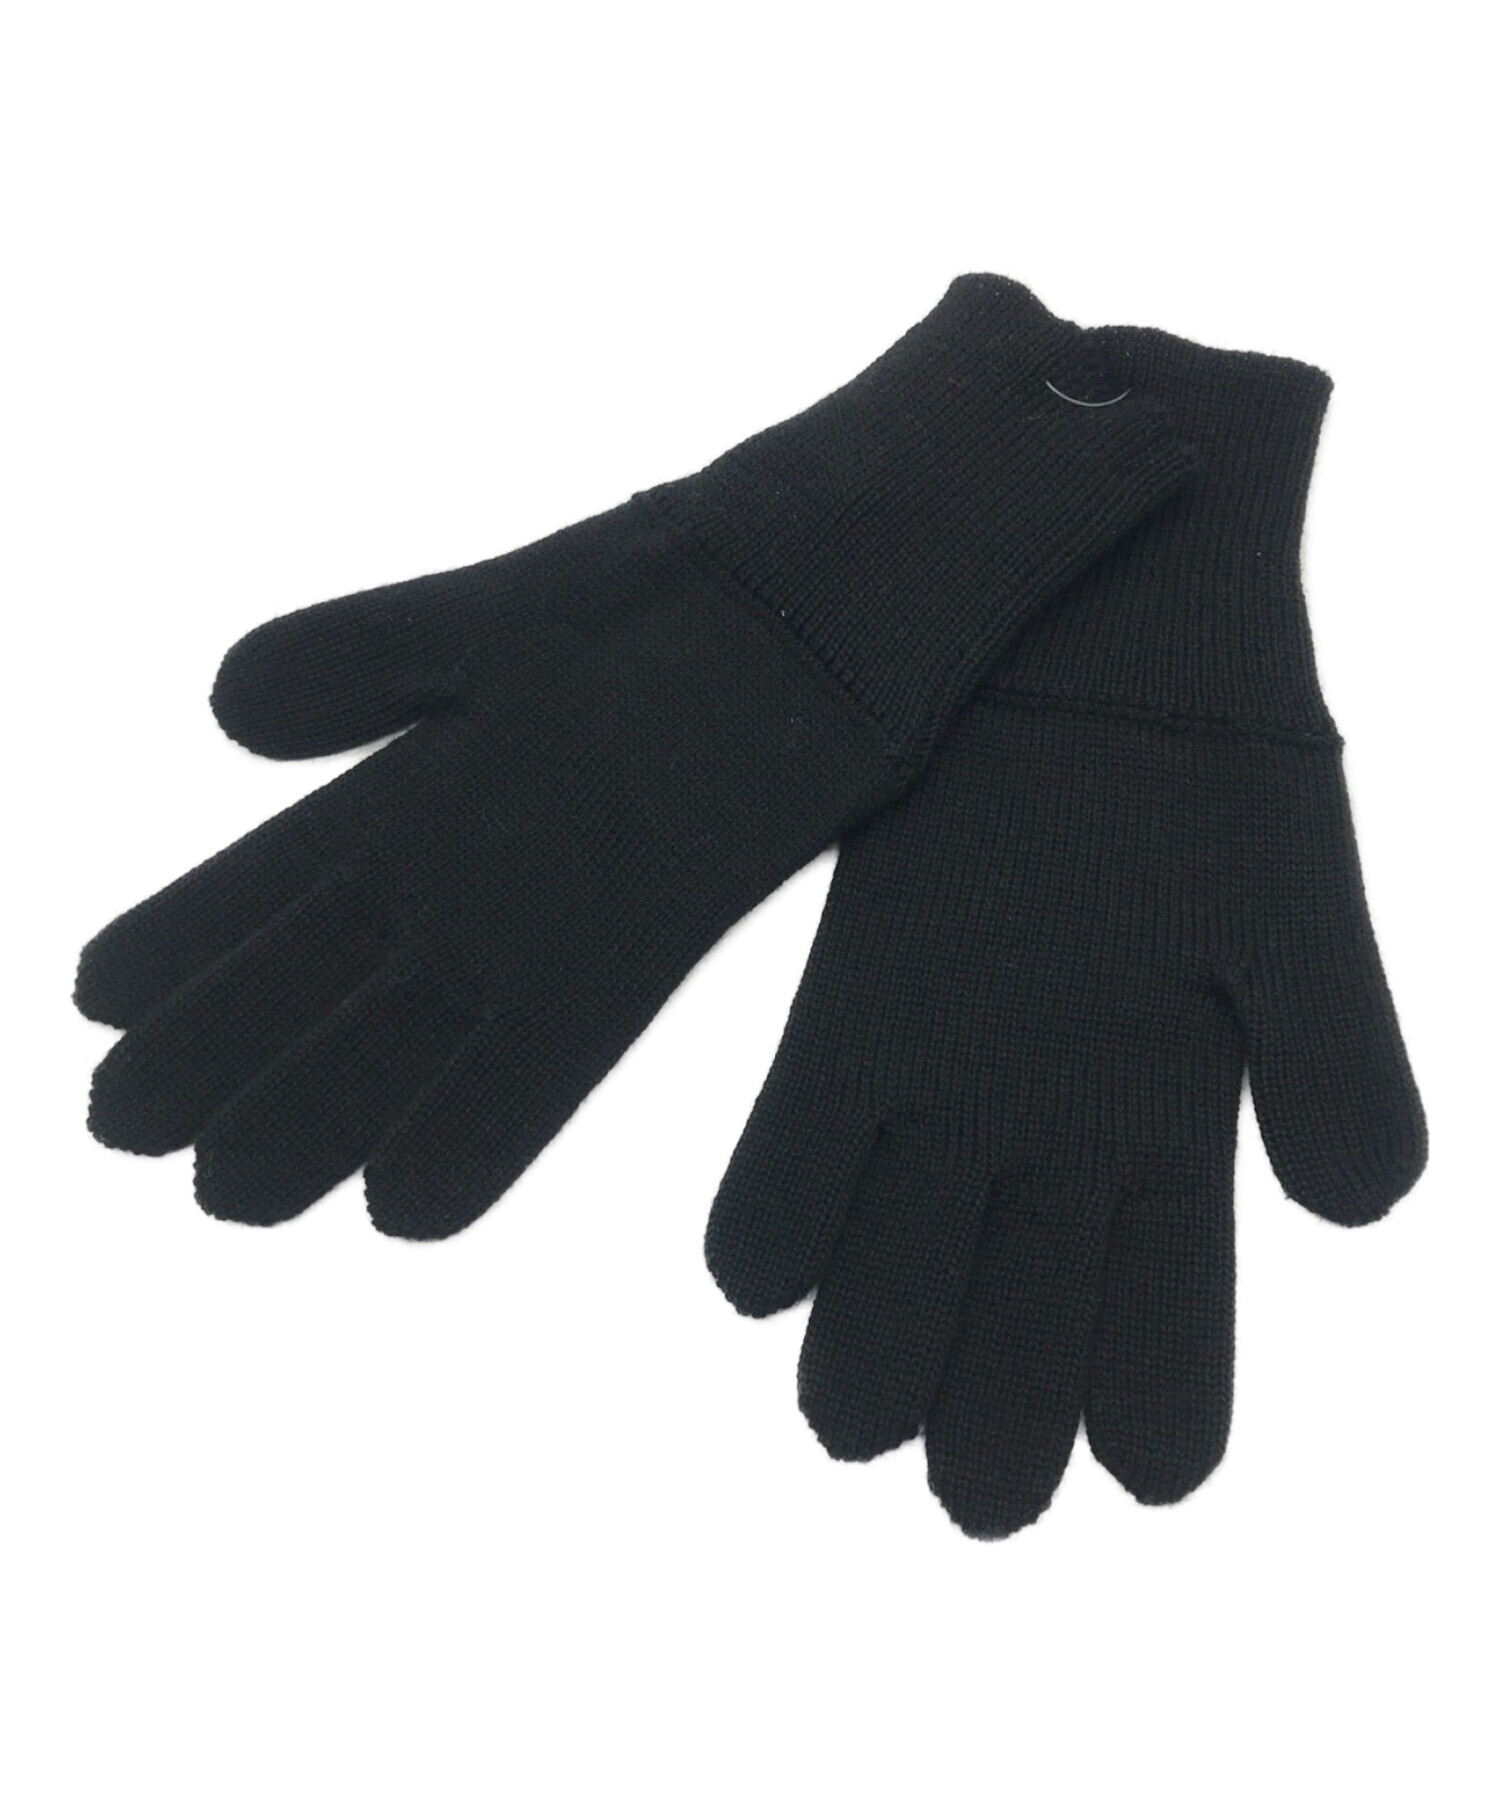 MM6 Maison Margiela (エムエムシックス メゾンマルジェラ) 手袋 ブラック サイズ:- 未使用品